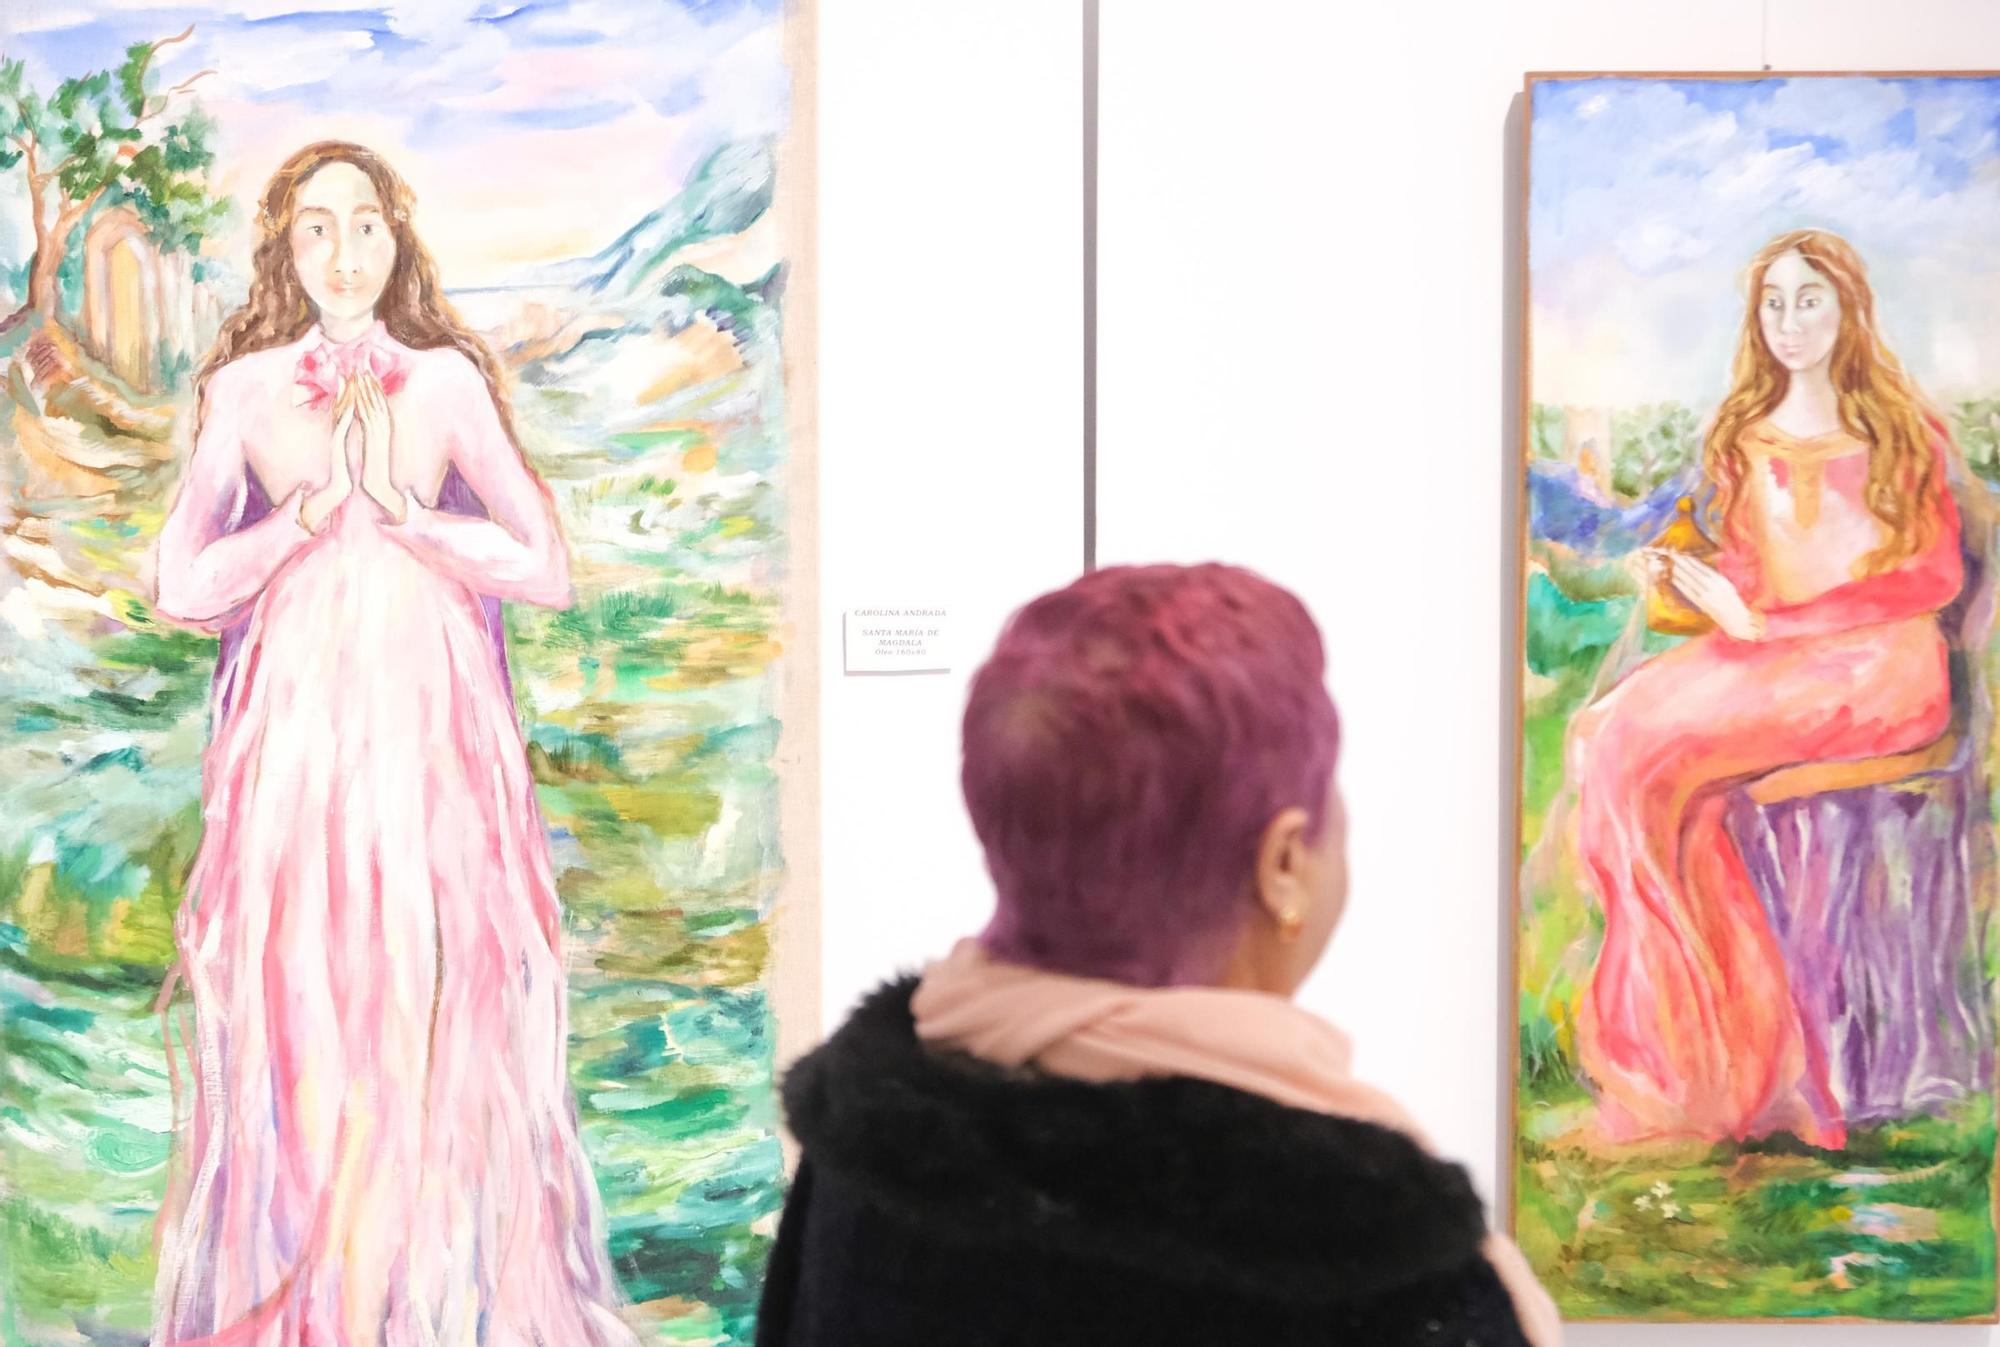 El realismo de Nati Pamies y el estilo onírico de Carolina Andrada, en la exposición "Mujer en el Arte" en Crevillent